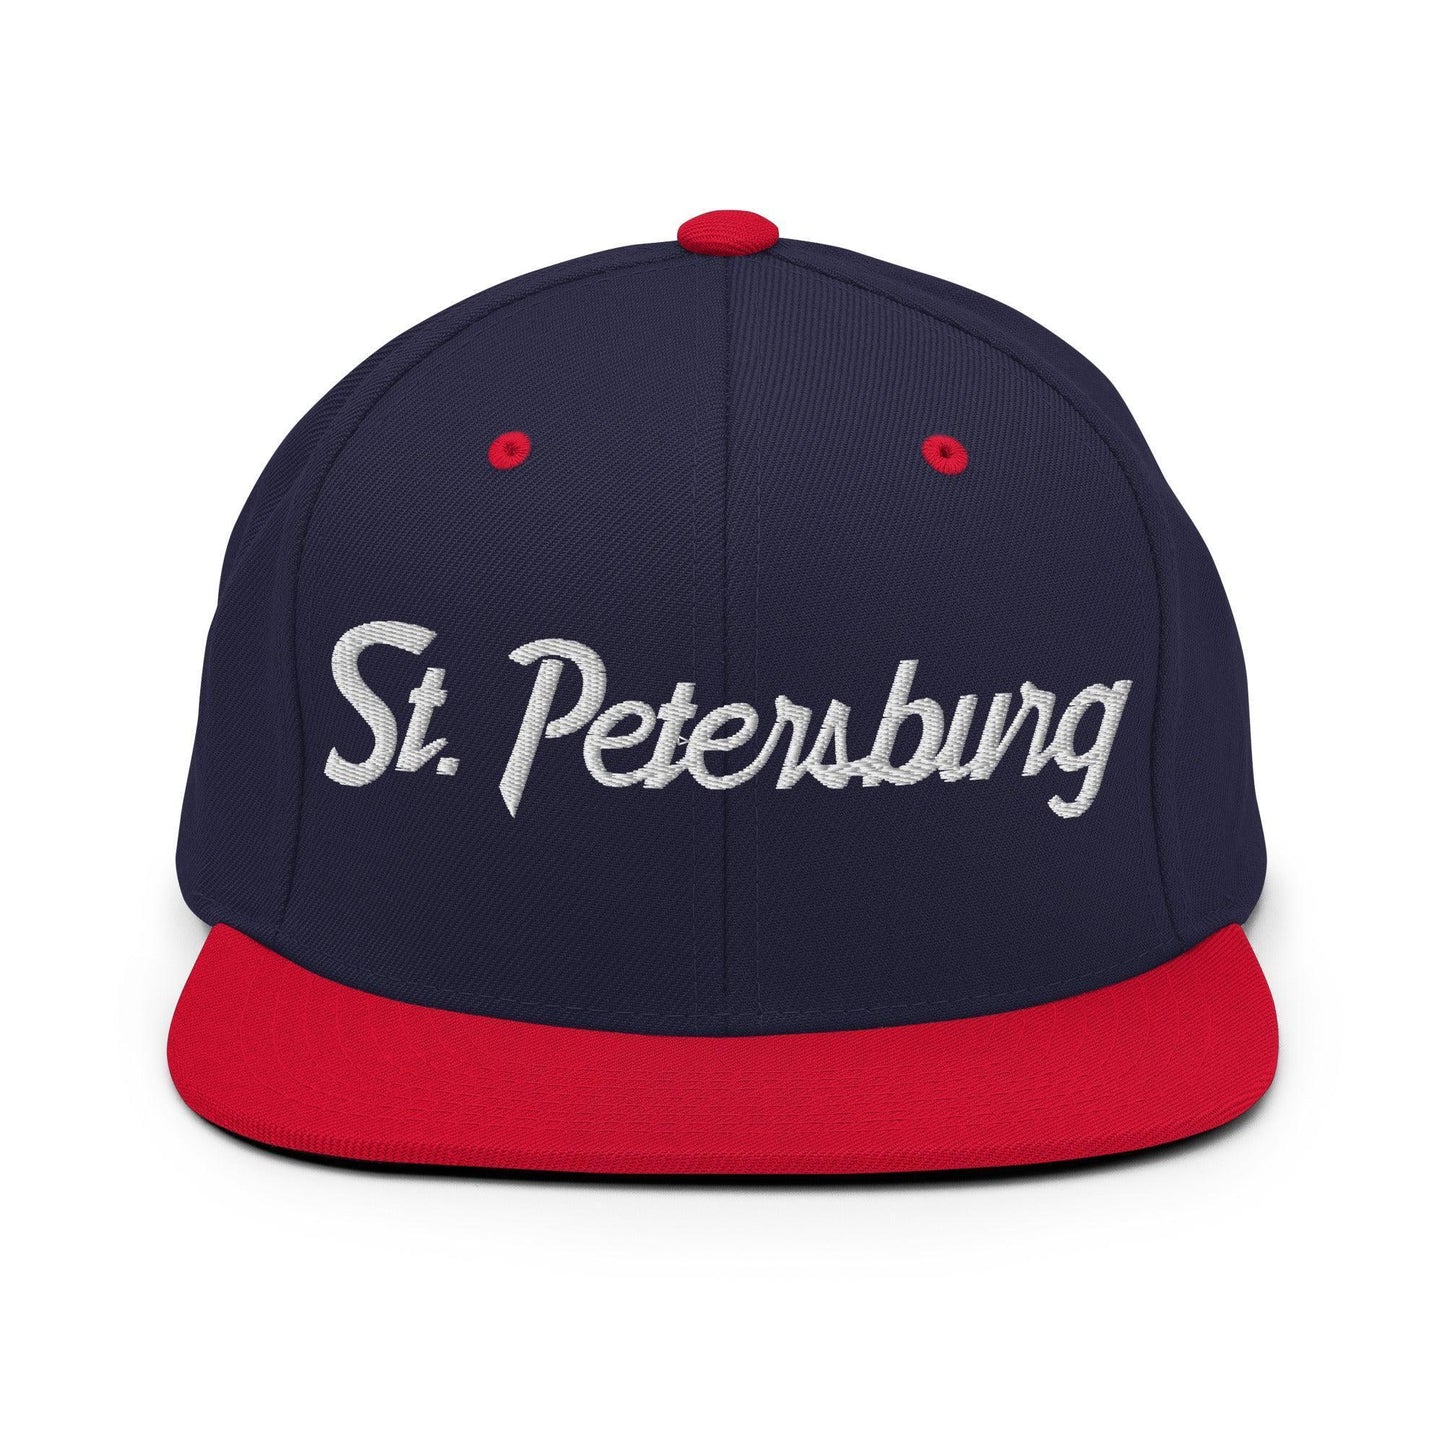 St. Petersburg Script Snapback Hat Navy/ Red